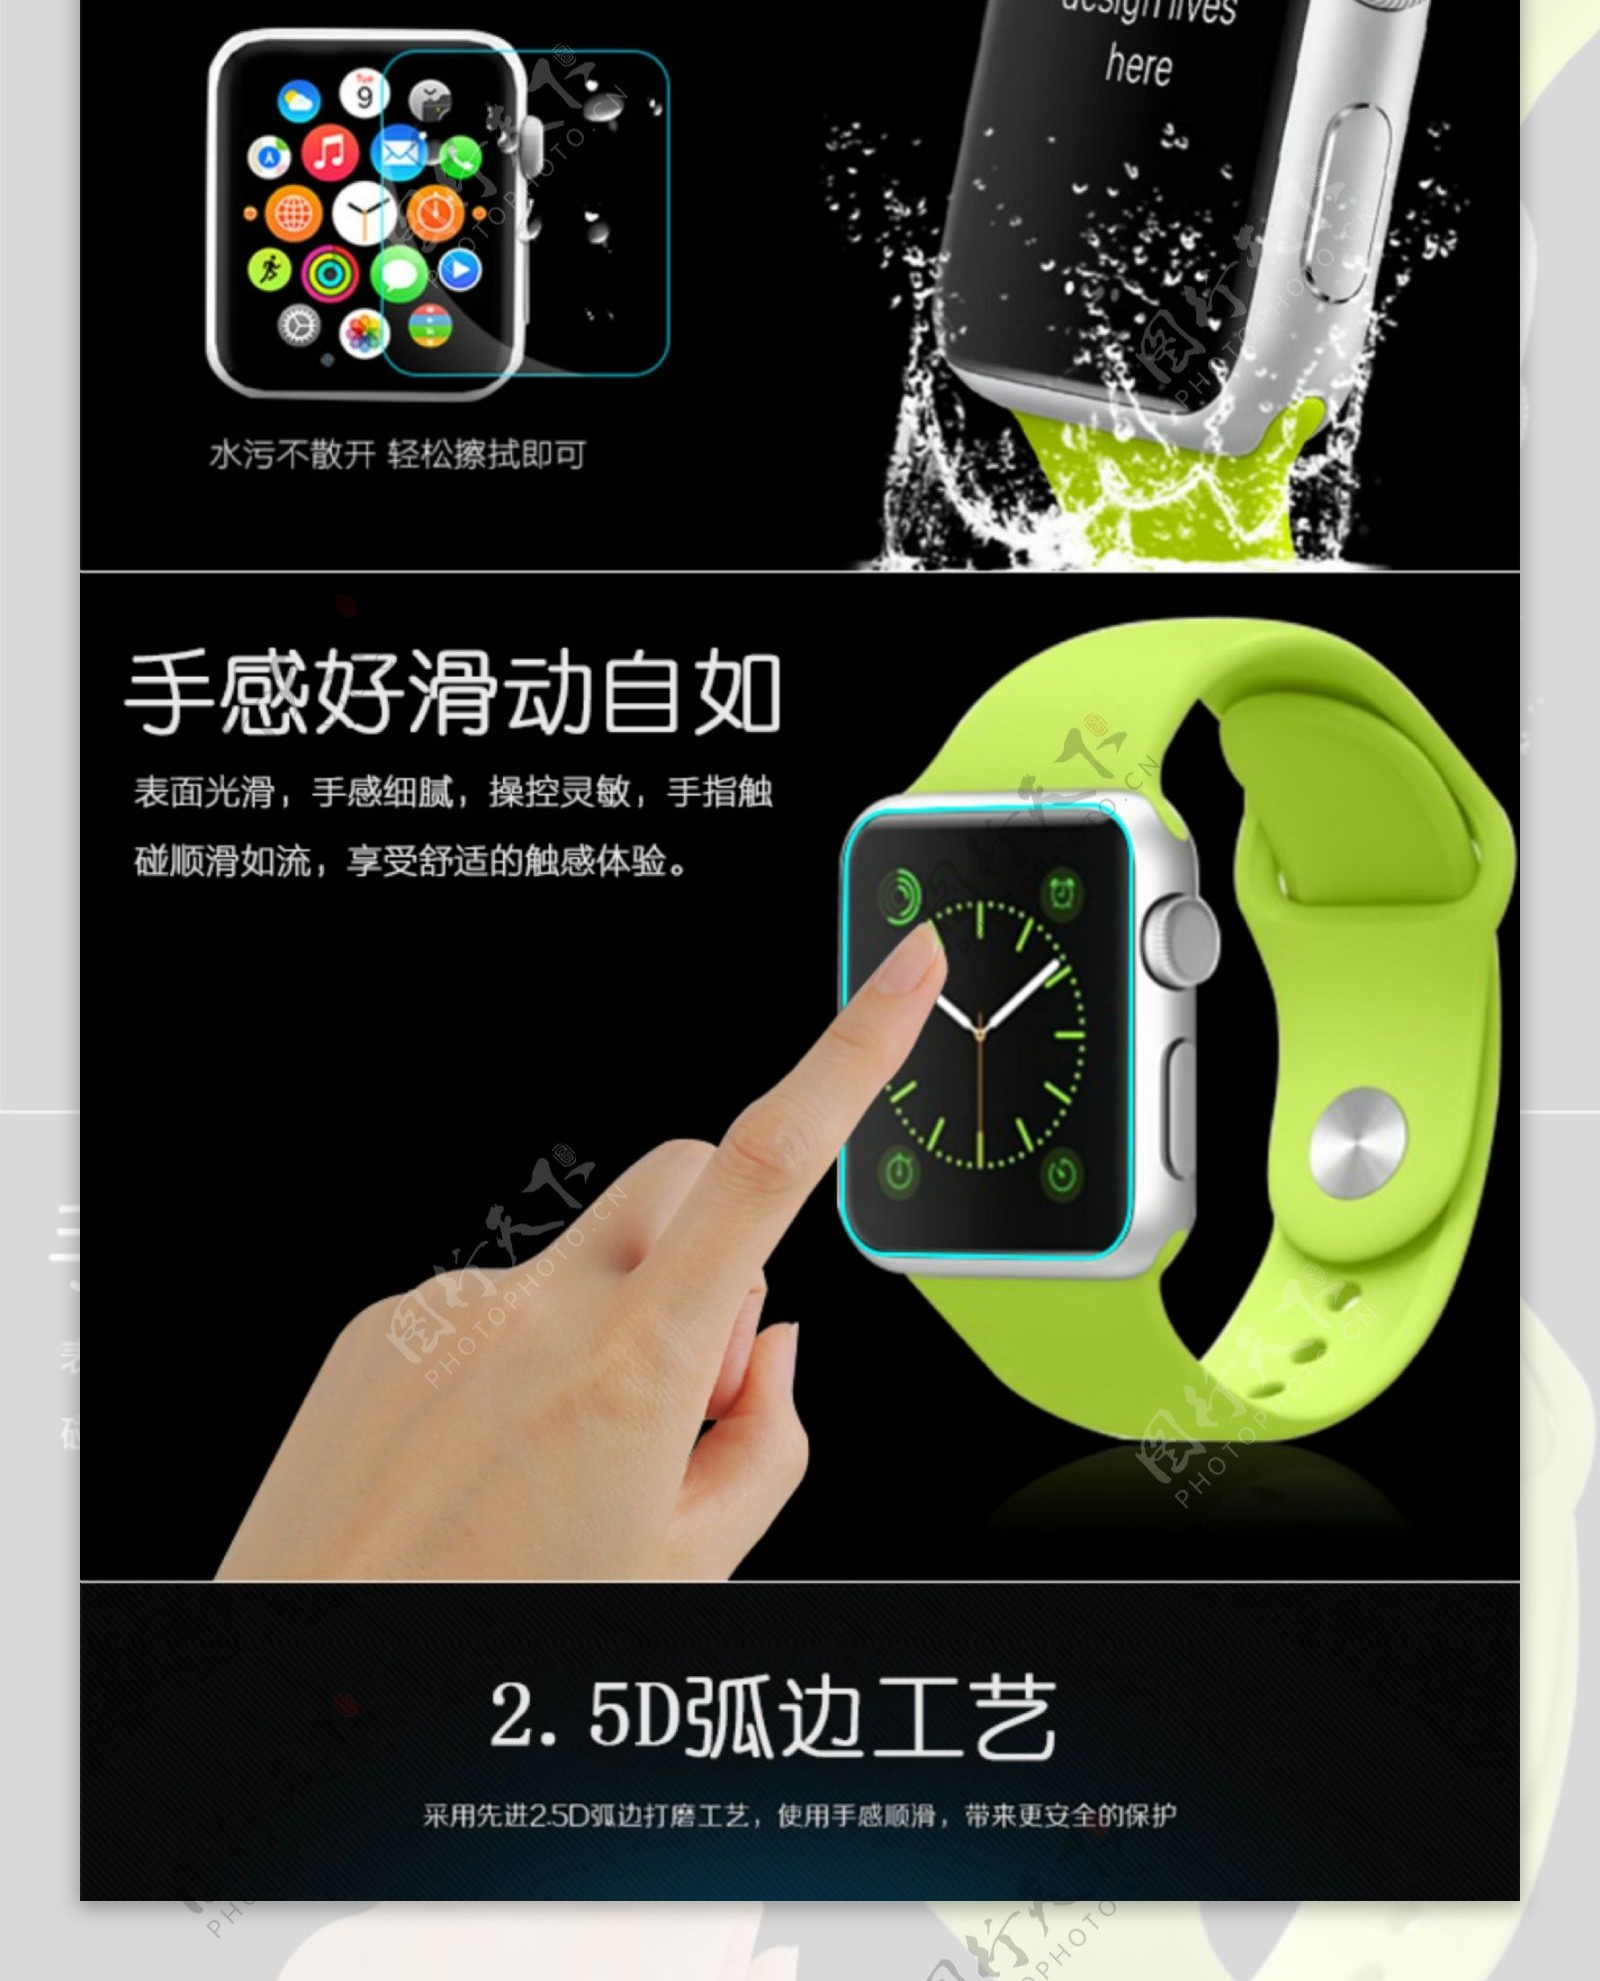 苹果手表钢化膜详情页Applewach